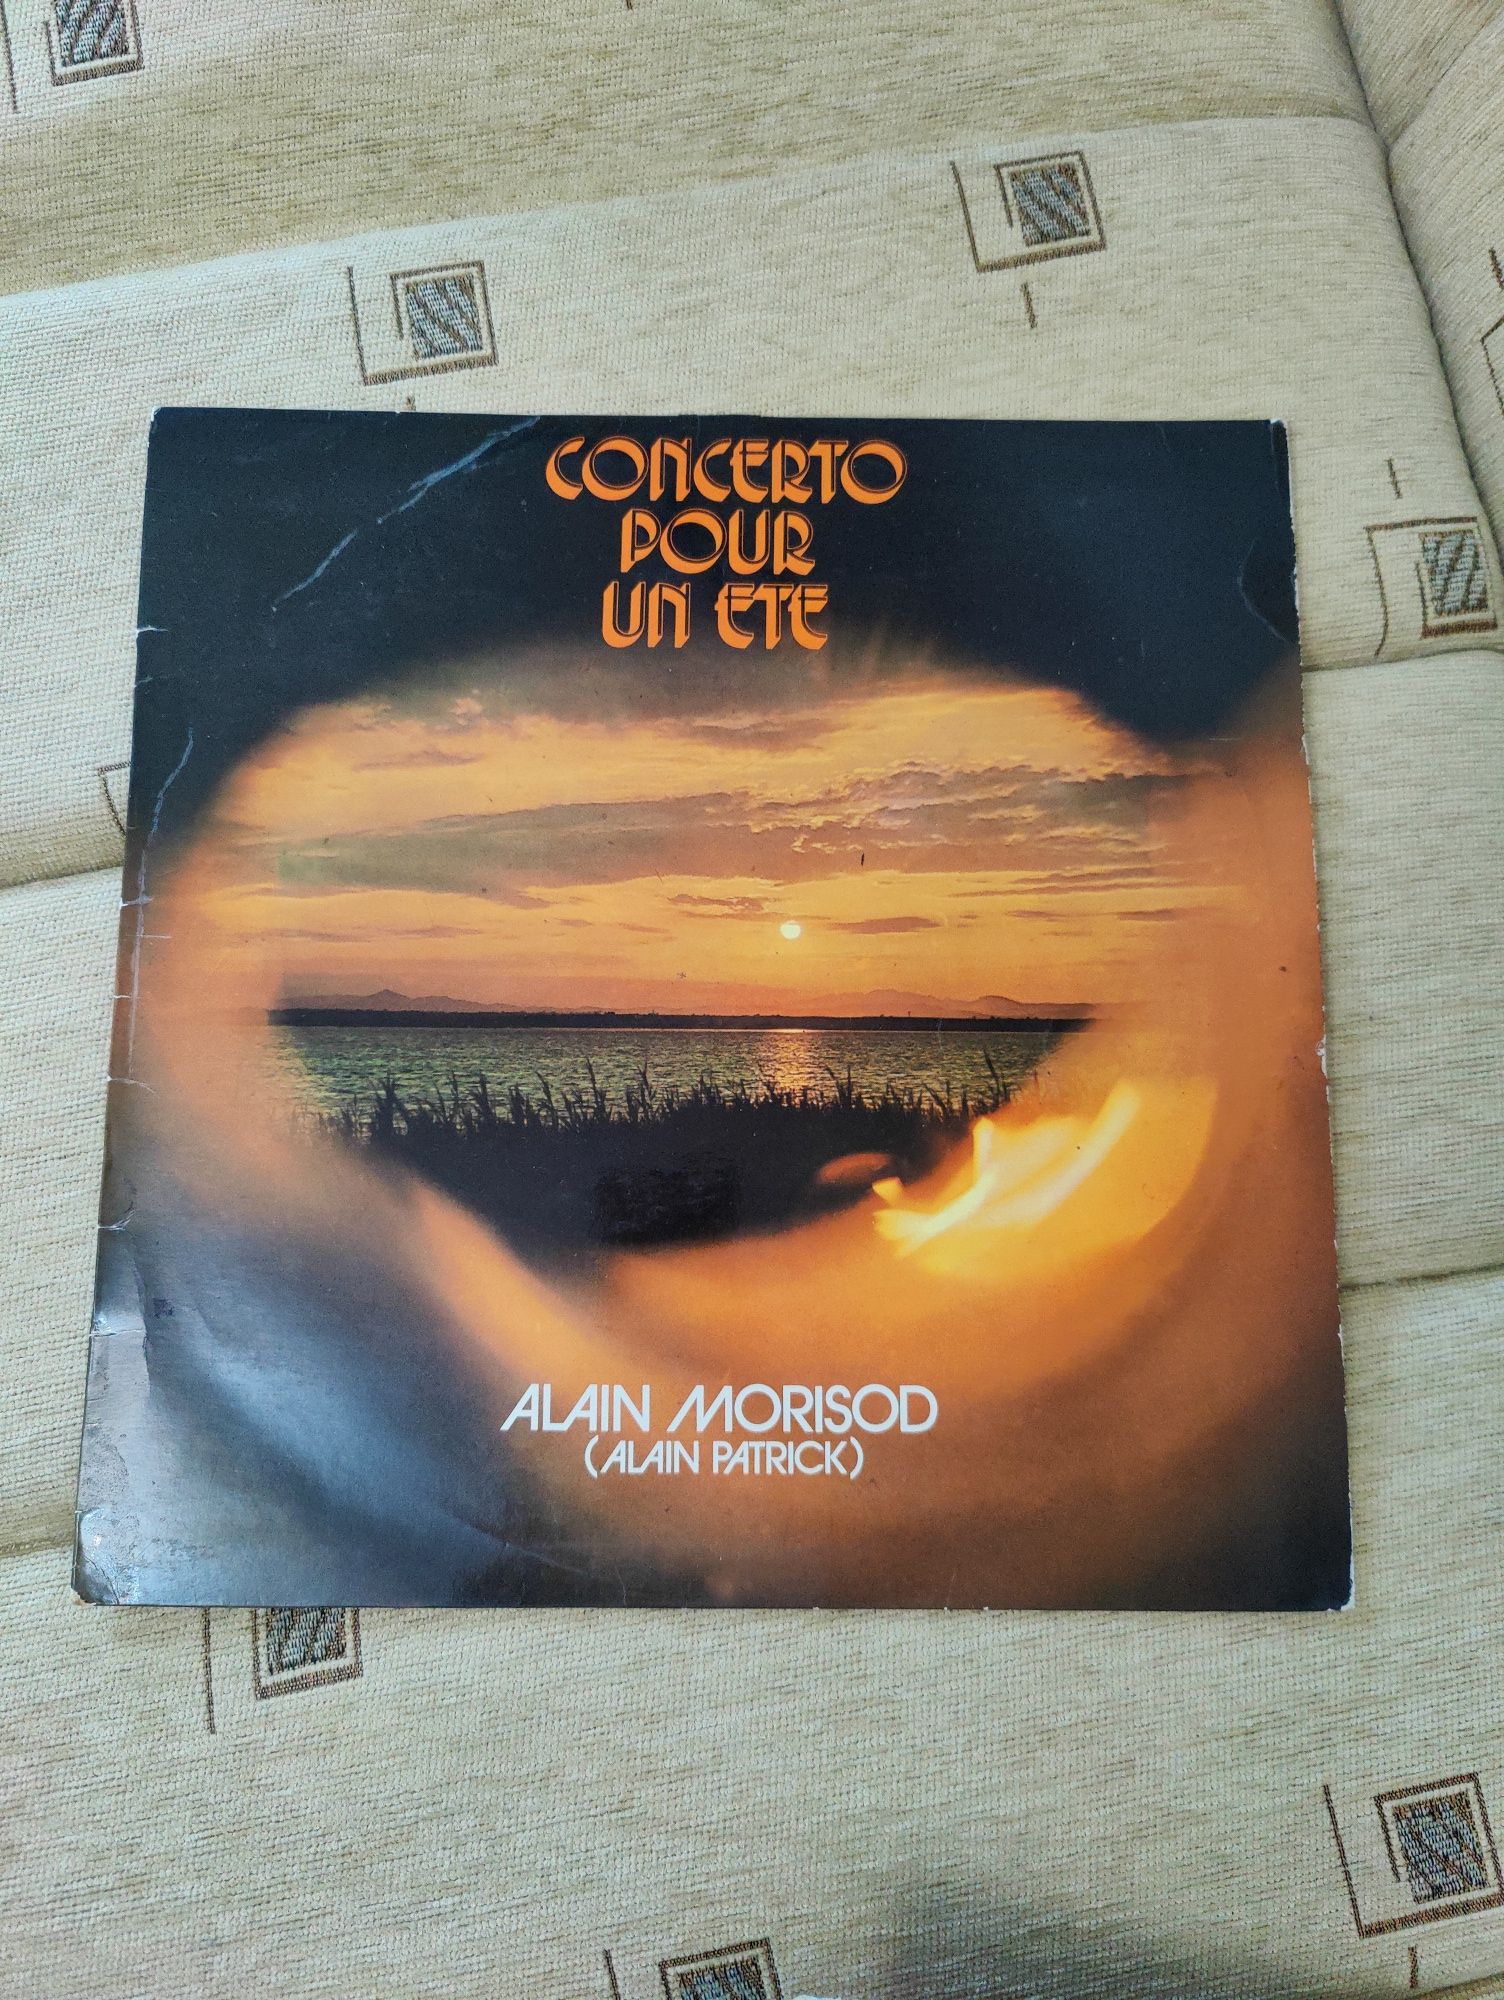 Vând vinyl Alain Morisod/Alain Patrick- Concerto pour un ete